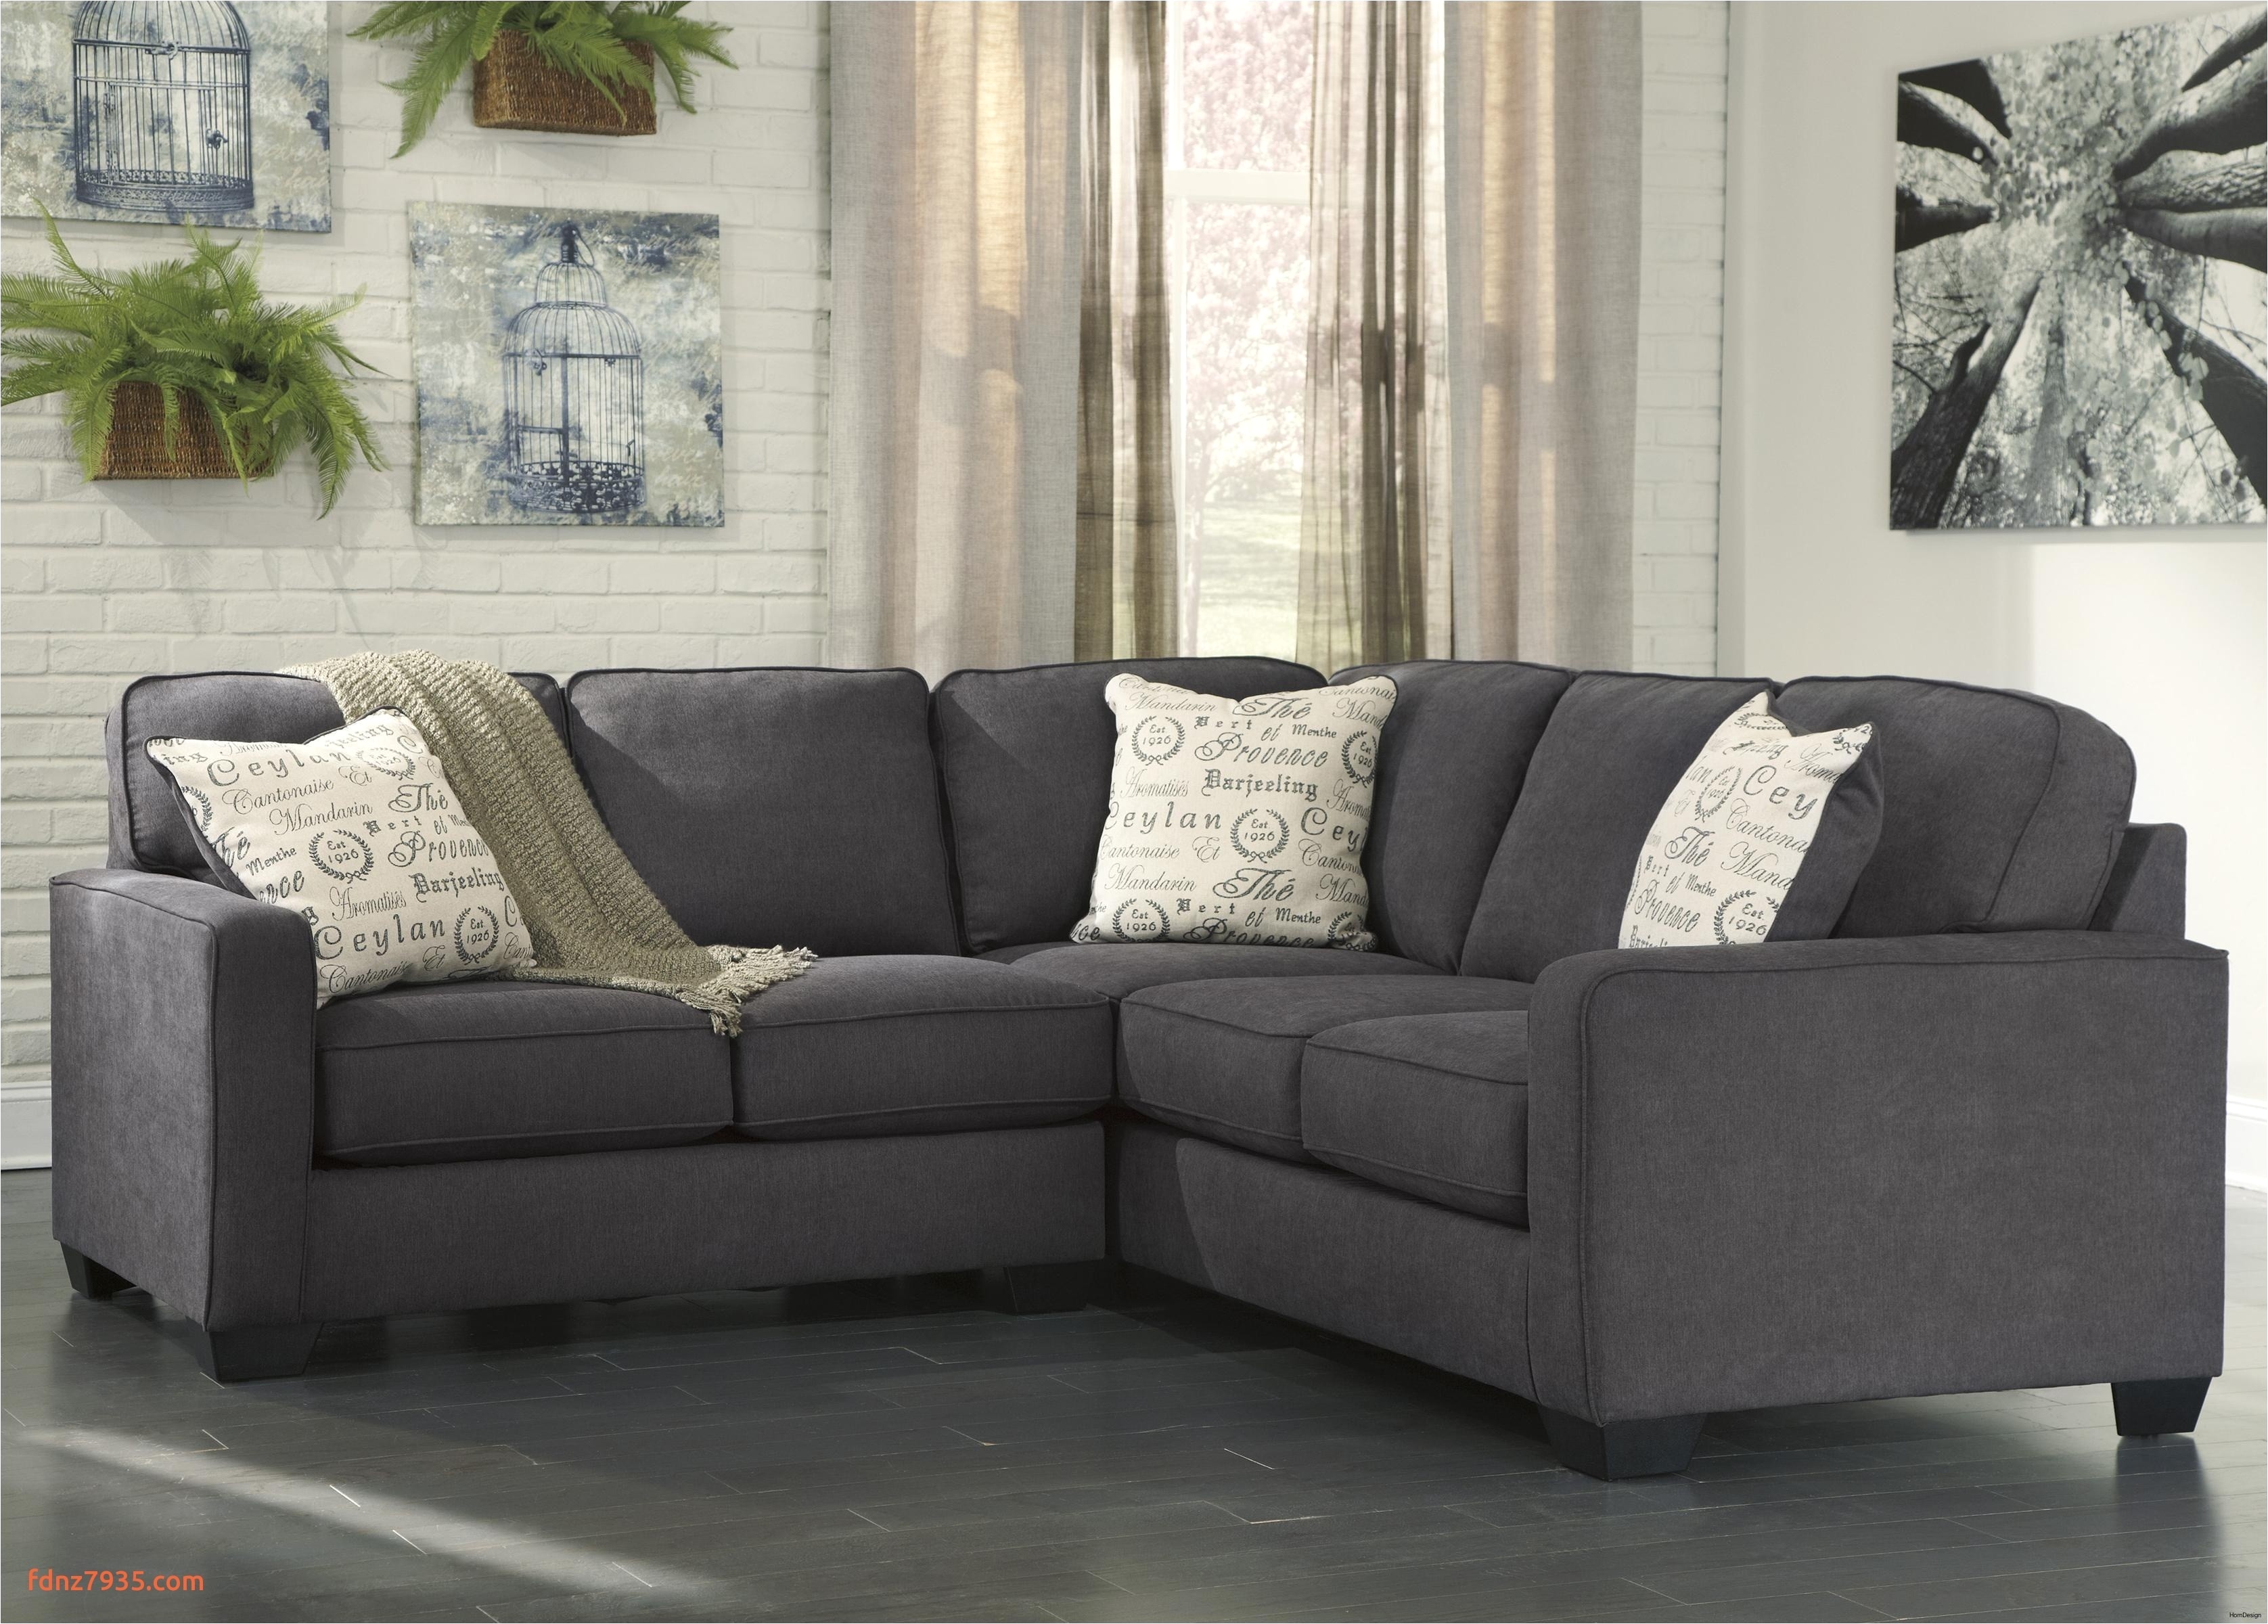 sofas for less fresh sofa design